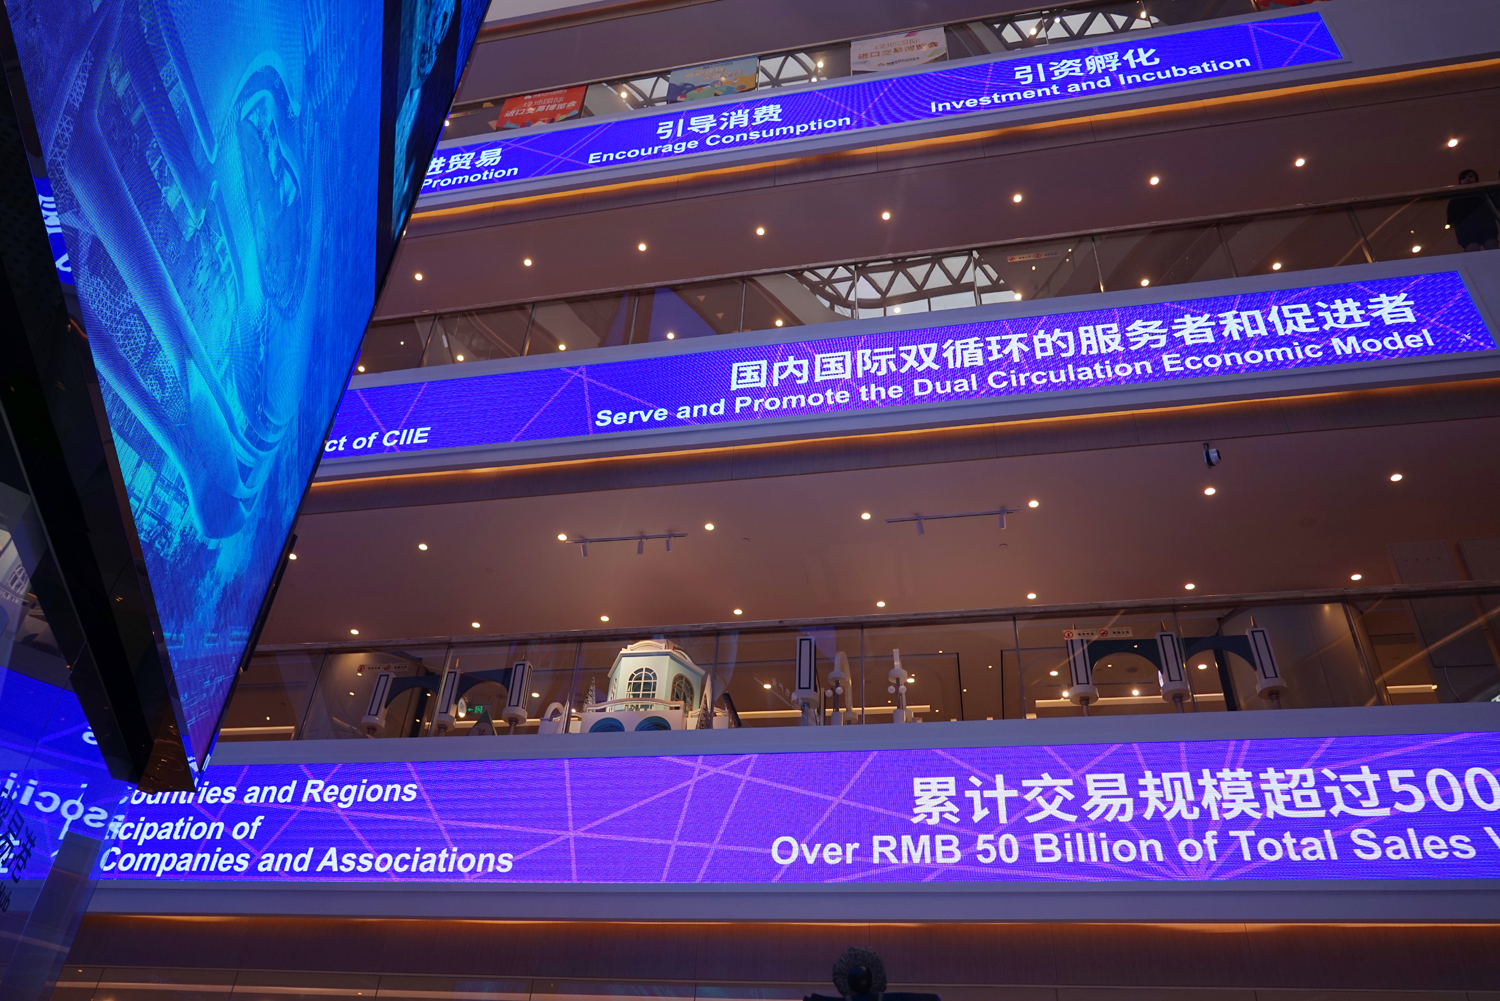 中国国际进口博览会“6天+365天”常年交易服务平台——绿地全球商品贸易港